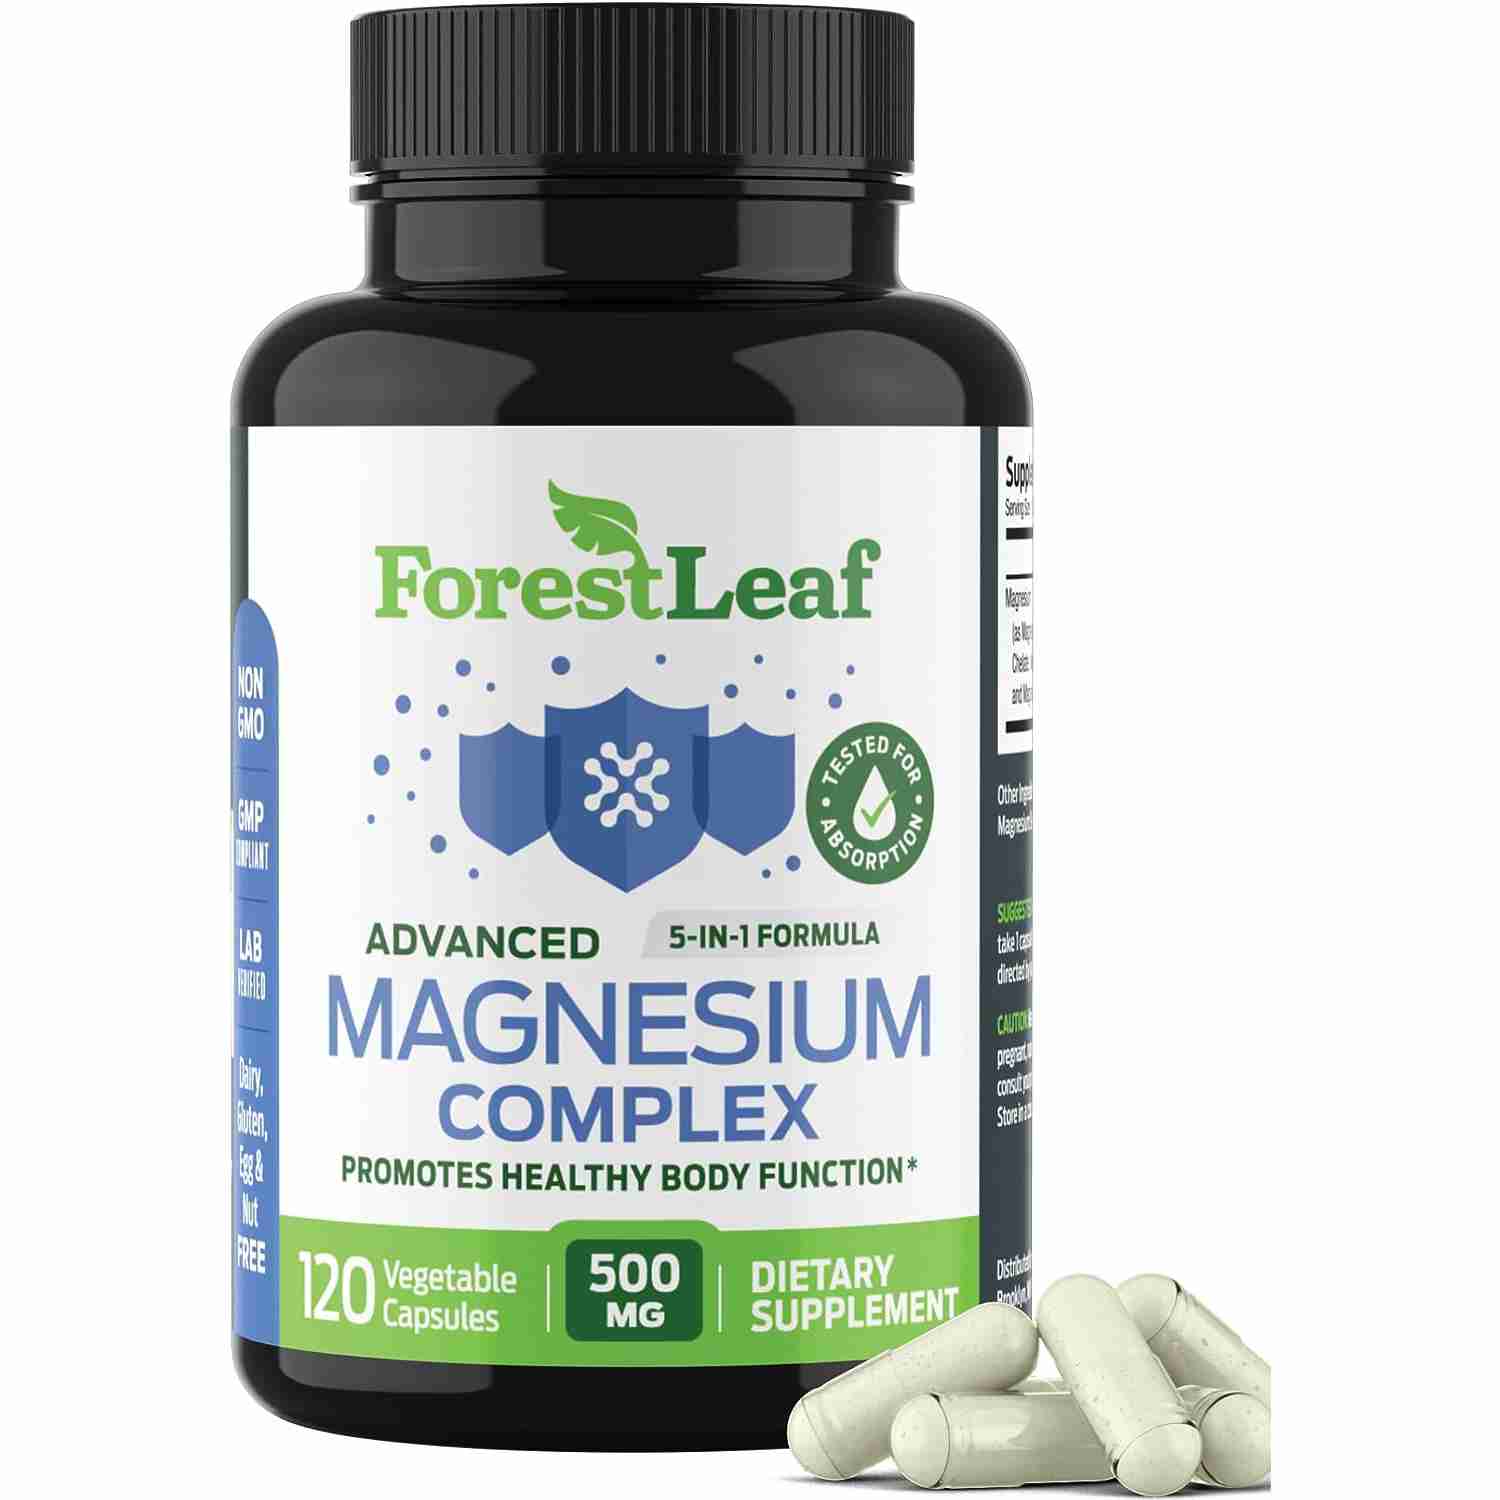 magnesium-complex with cash back rebate